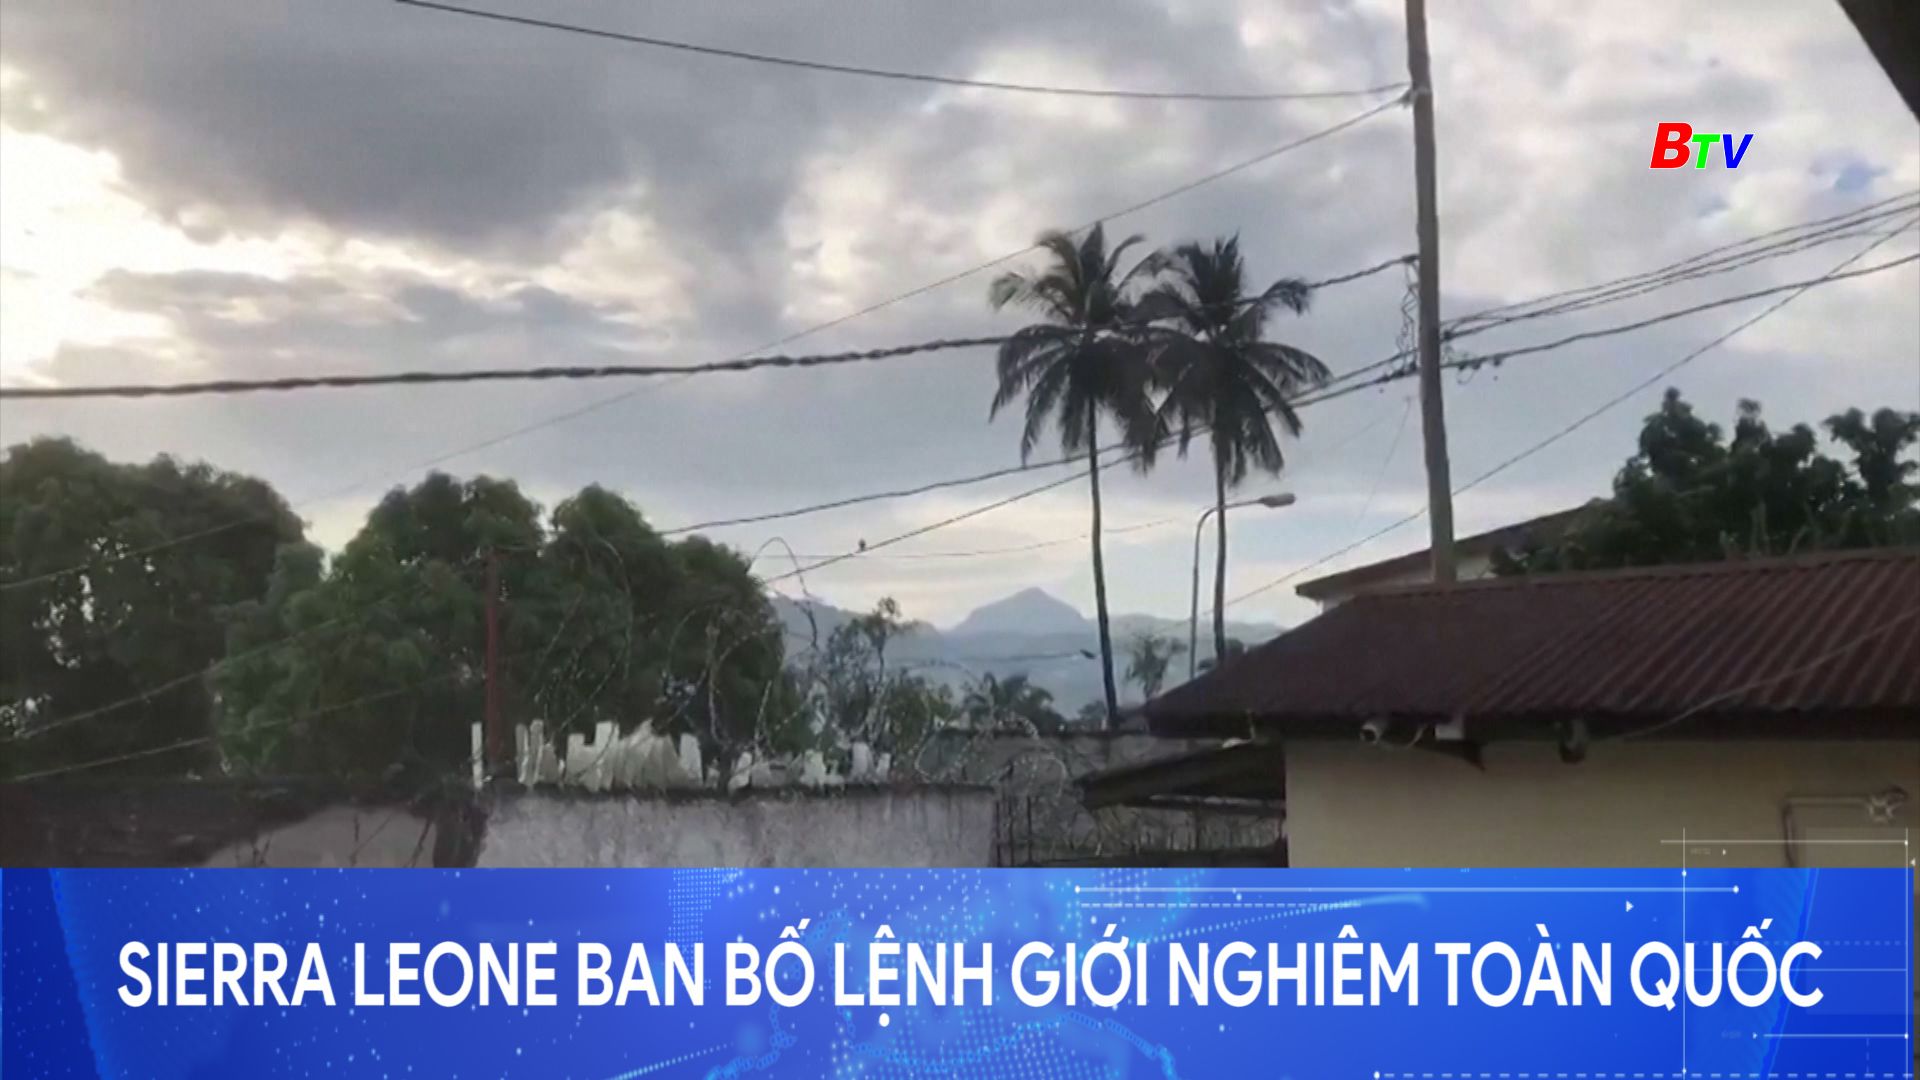 Sierra Leone ban bố lệnh giới nghiêm toàn quốc